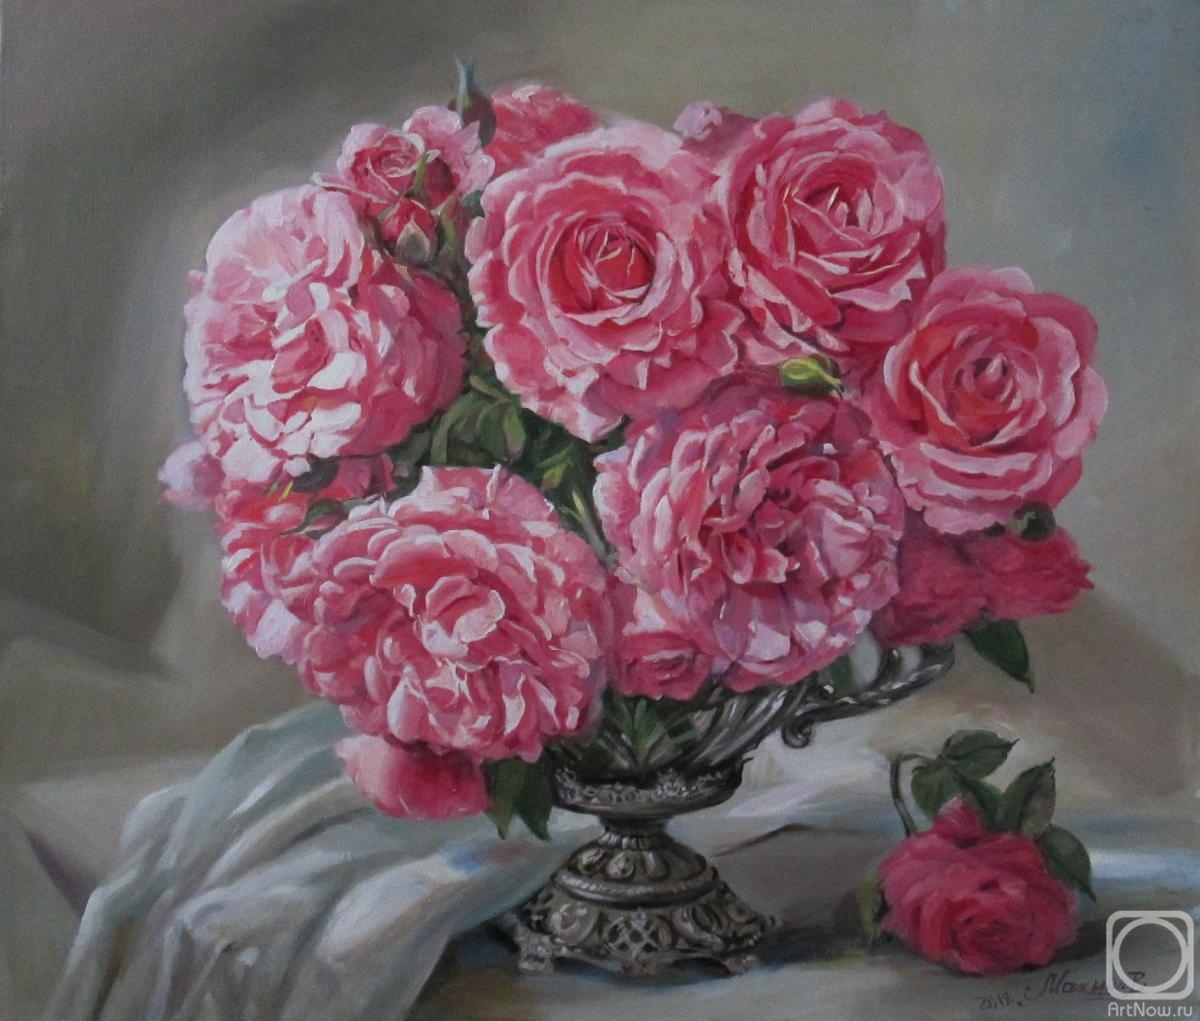 Mahnach Valeriya. Roses